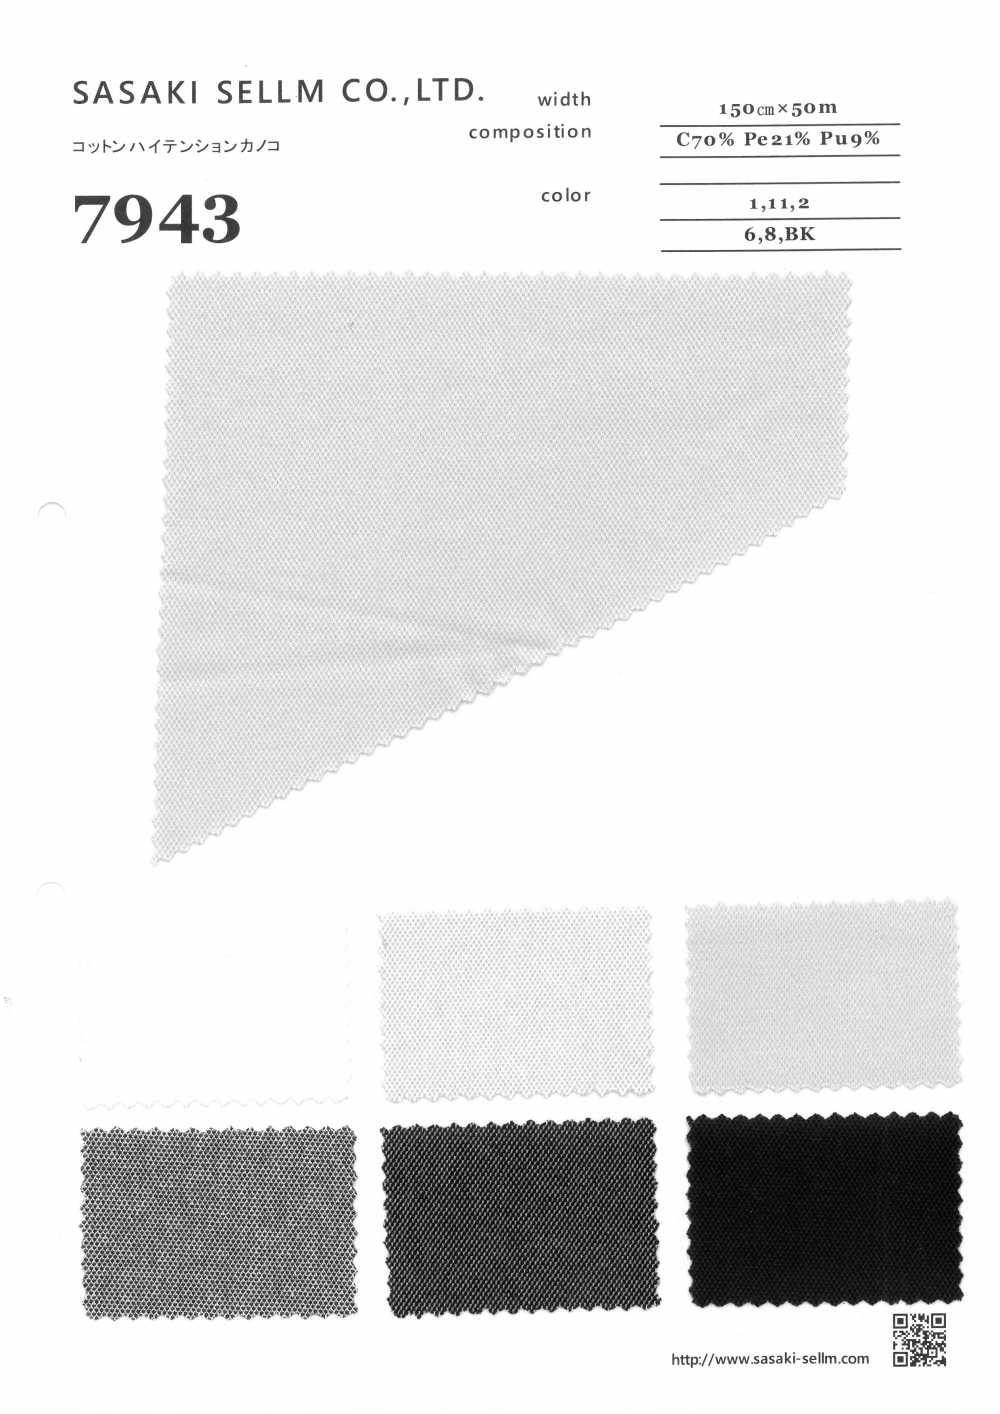 7943 Hochspannungs-Perlstich Aus Baumwolle[Textilgewebe] SASAKISELLM